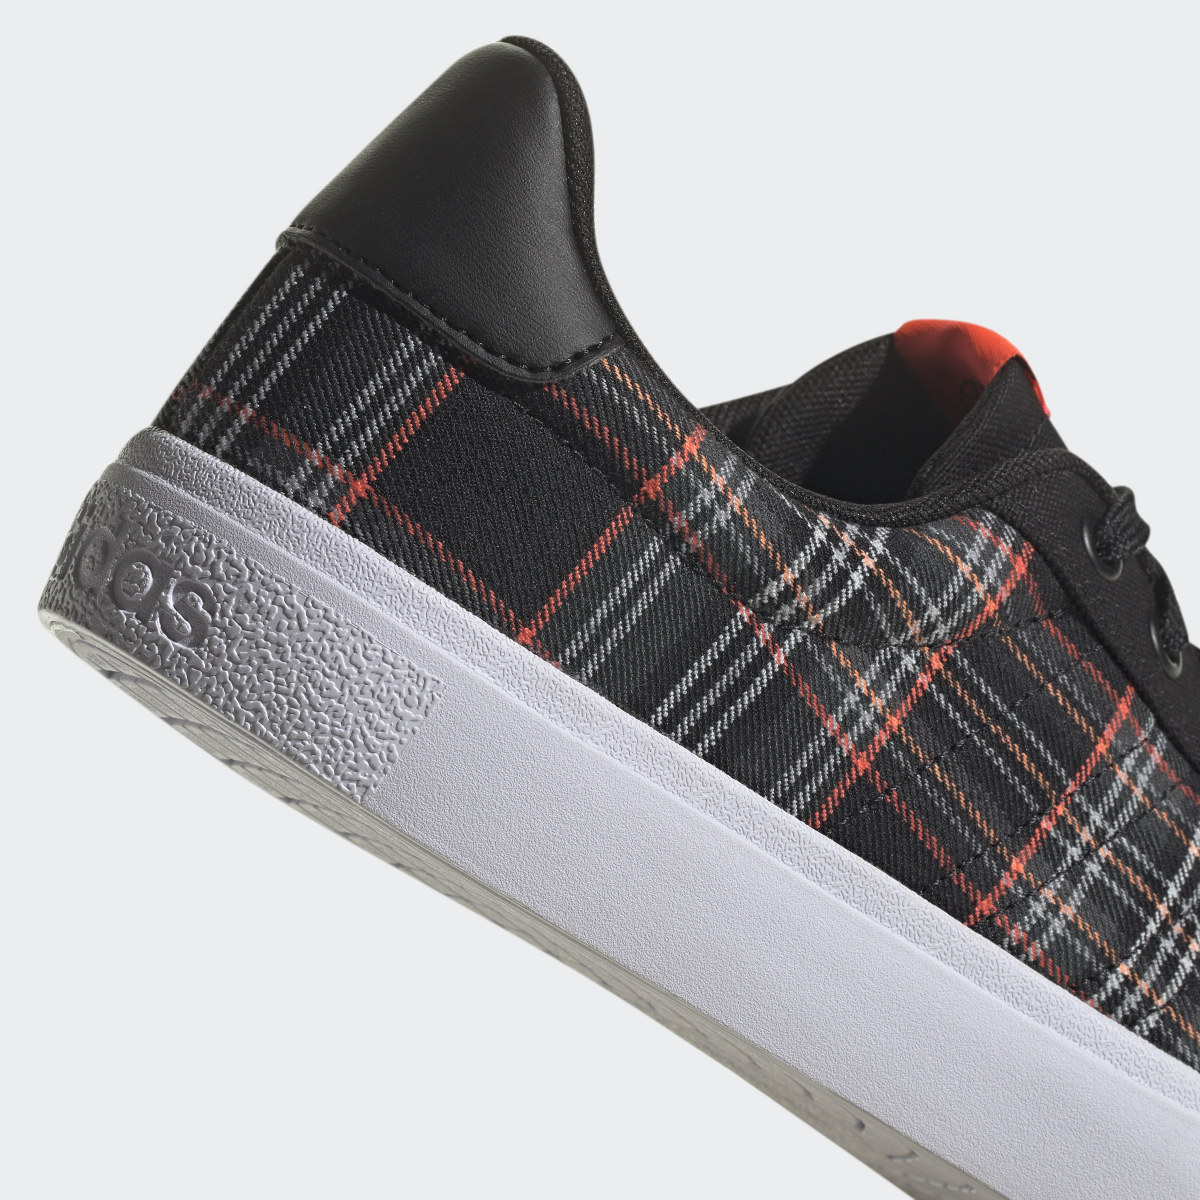 Adidas Vulc Raid3r Lifestyle Skateboarding 3-Stripes Branding Shoes. 9